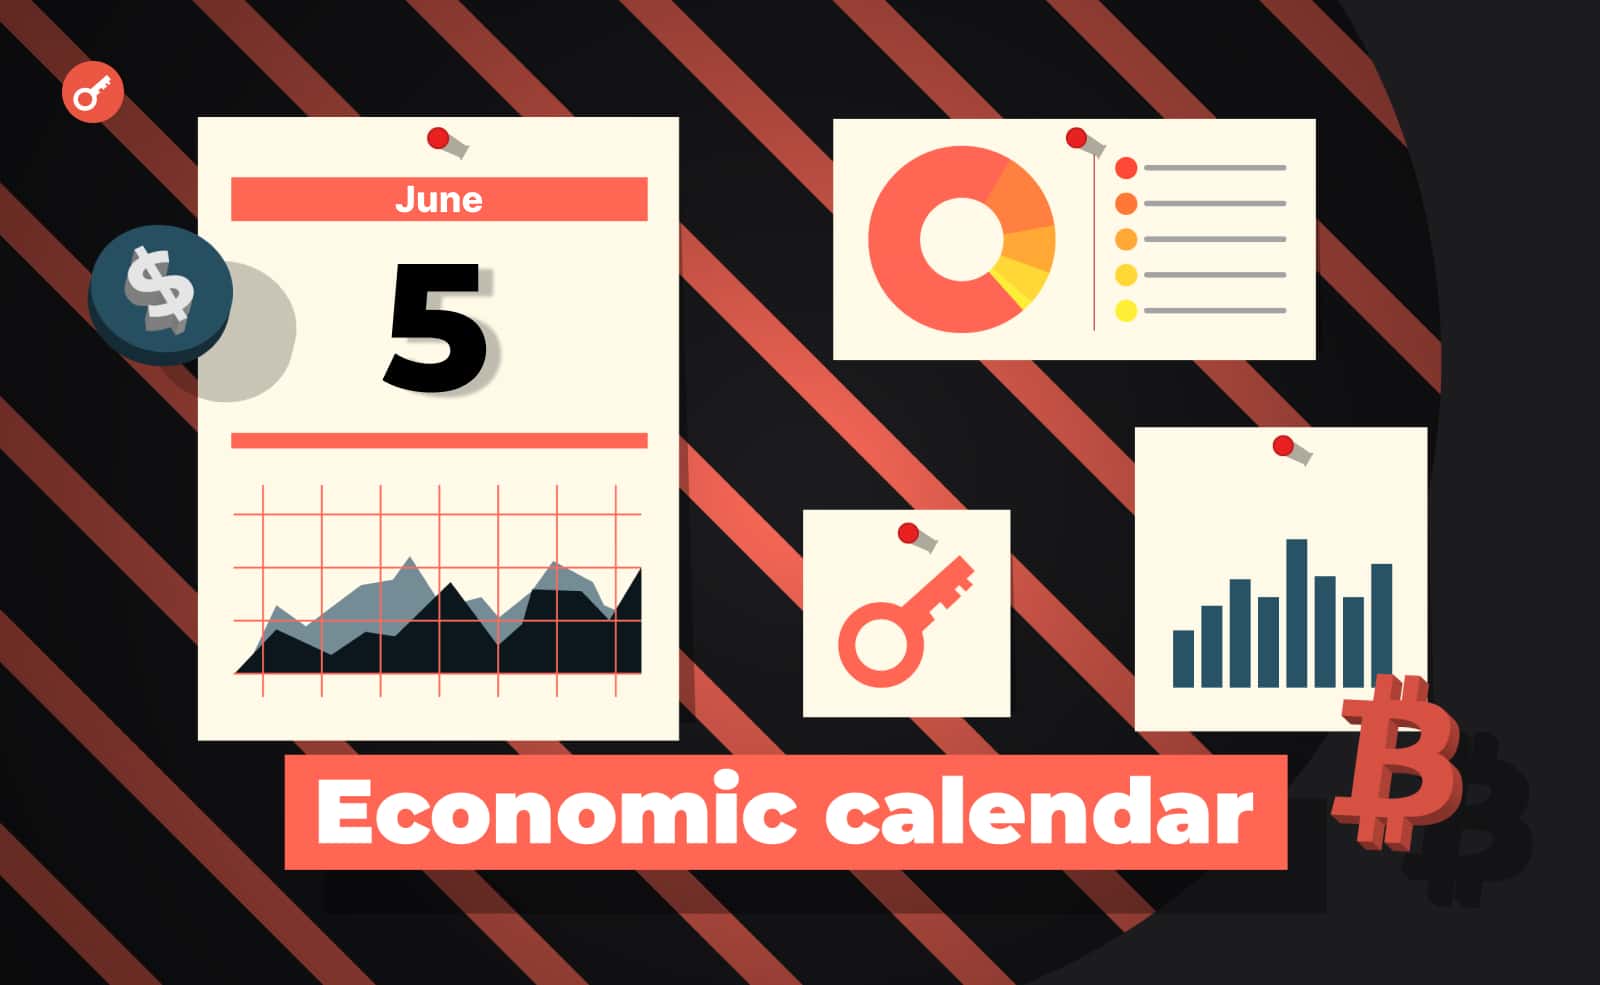 Экономический календарь 5-9 июня: торговый баланс США, новости от Ripple и инфляция в Китае. Заглавный коллаж новости.